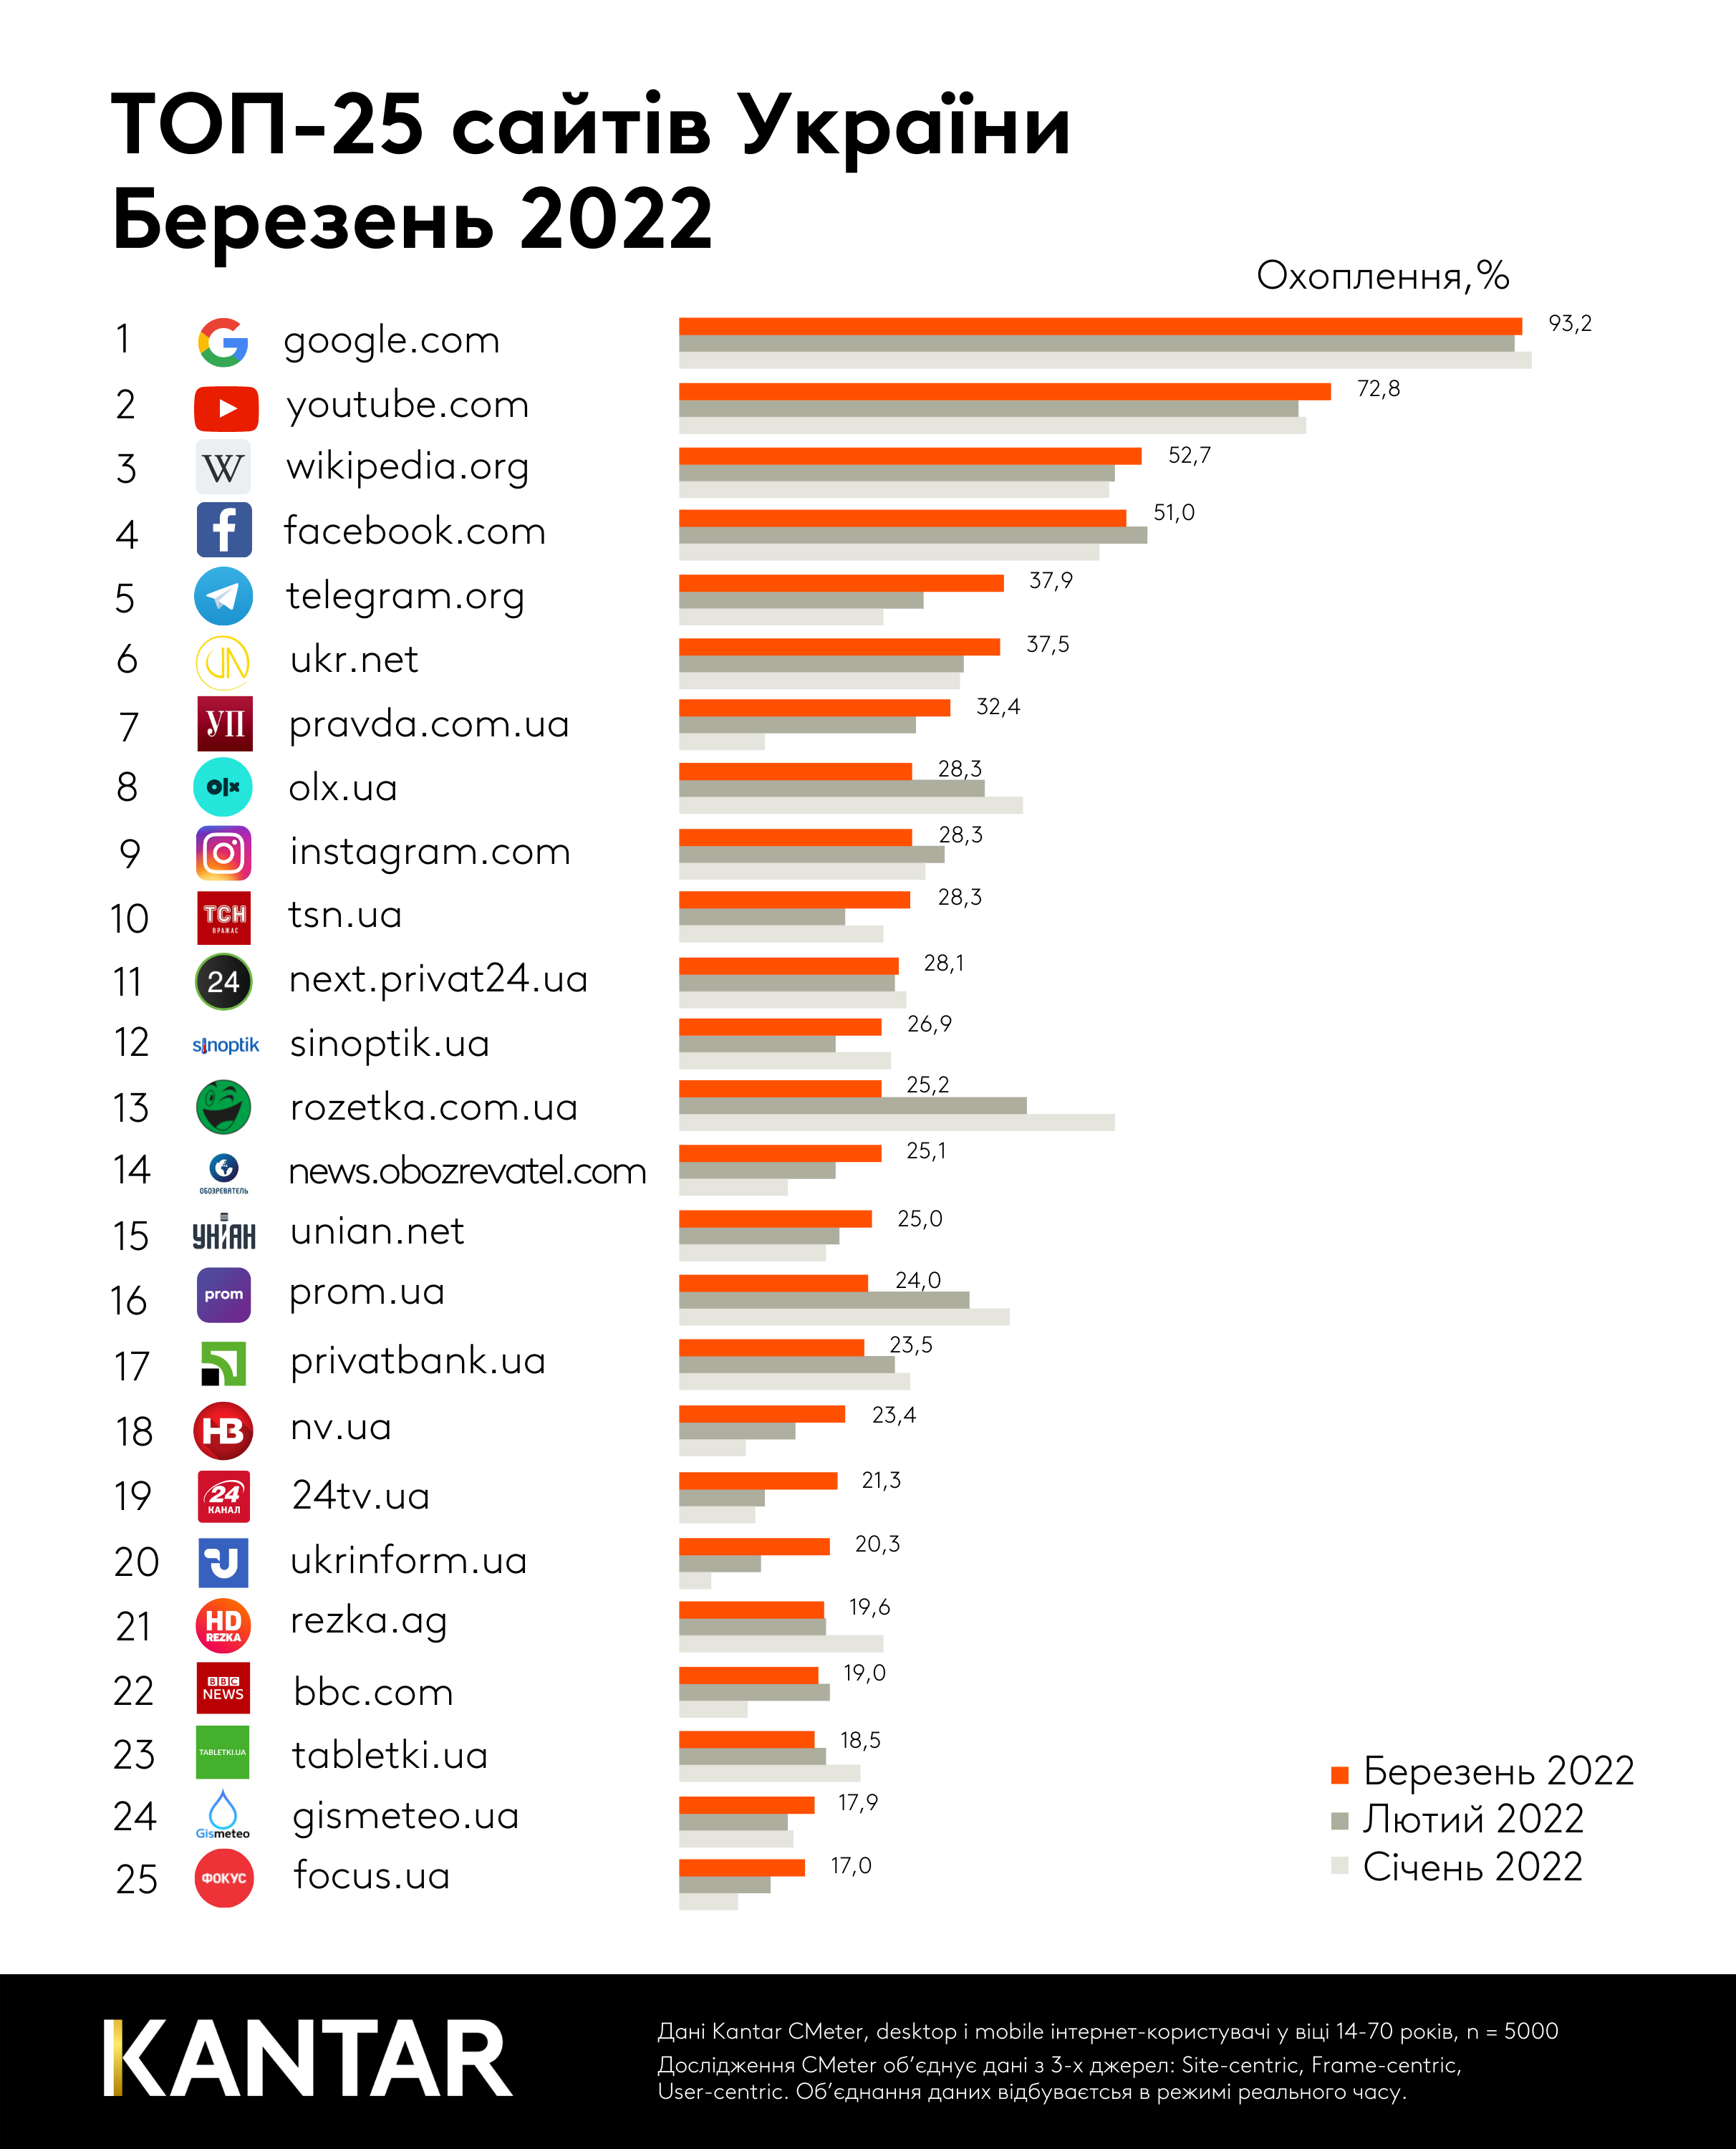 Український інтернет після початку війни: Telegram увійшов у топ-5 сайтів, Rozetka та Prom вибули з першої десятки